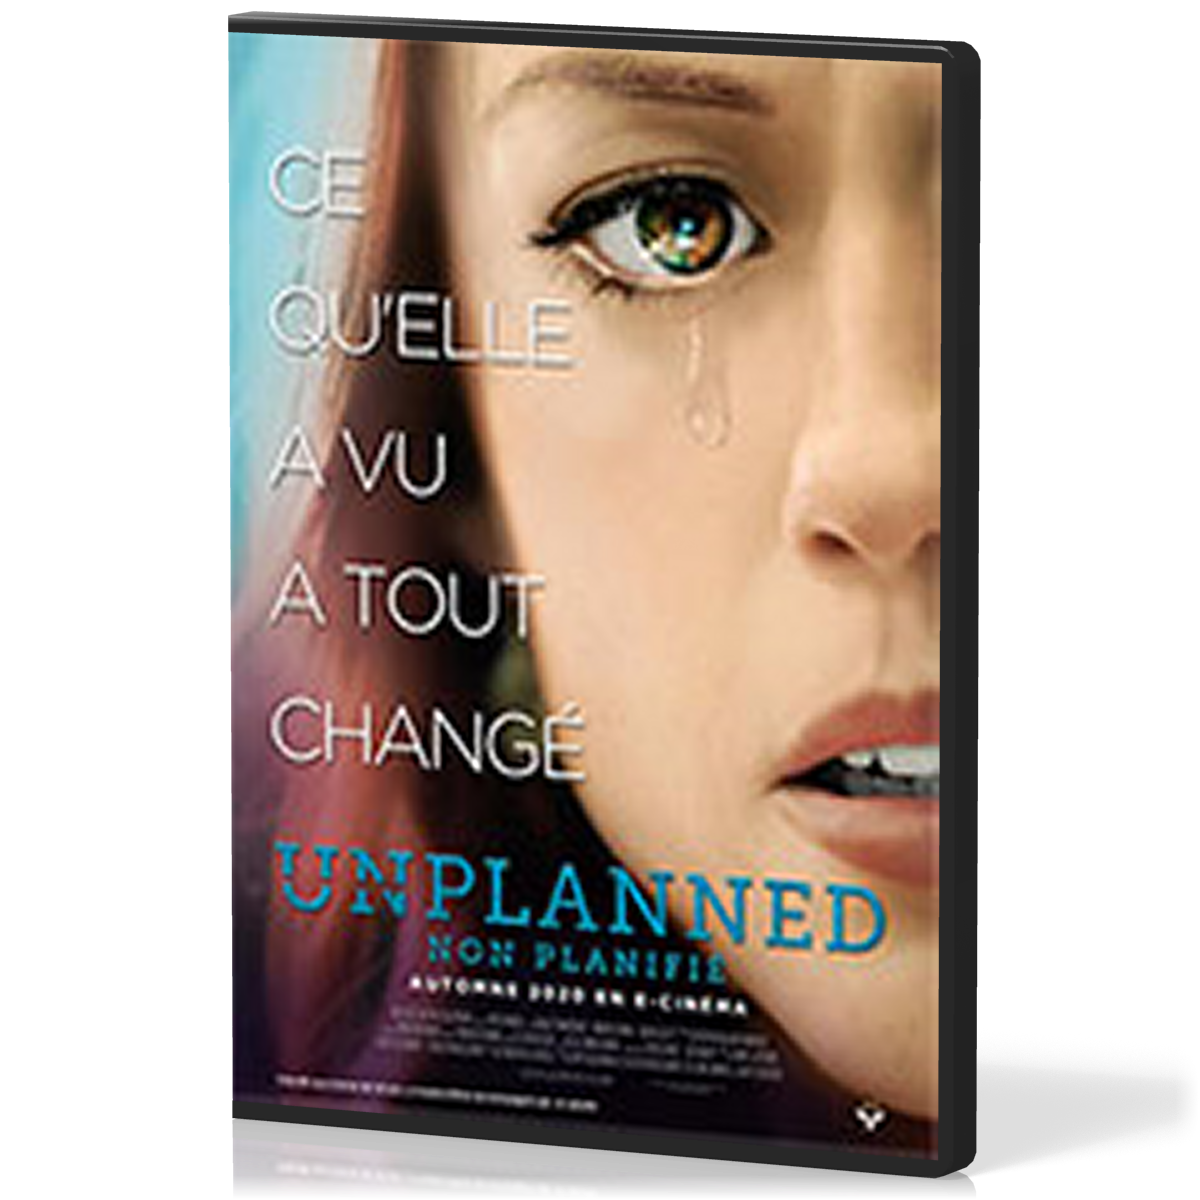 Unplanned - (2019) [DVD] Non planifié